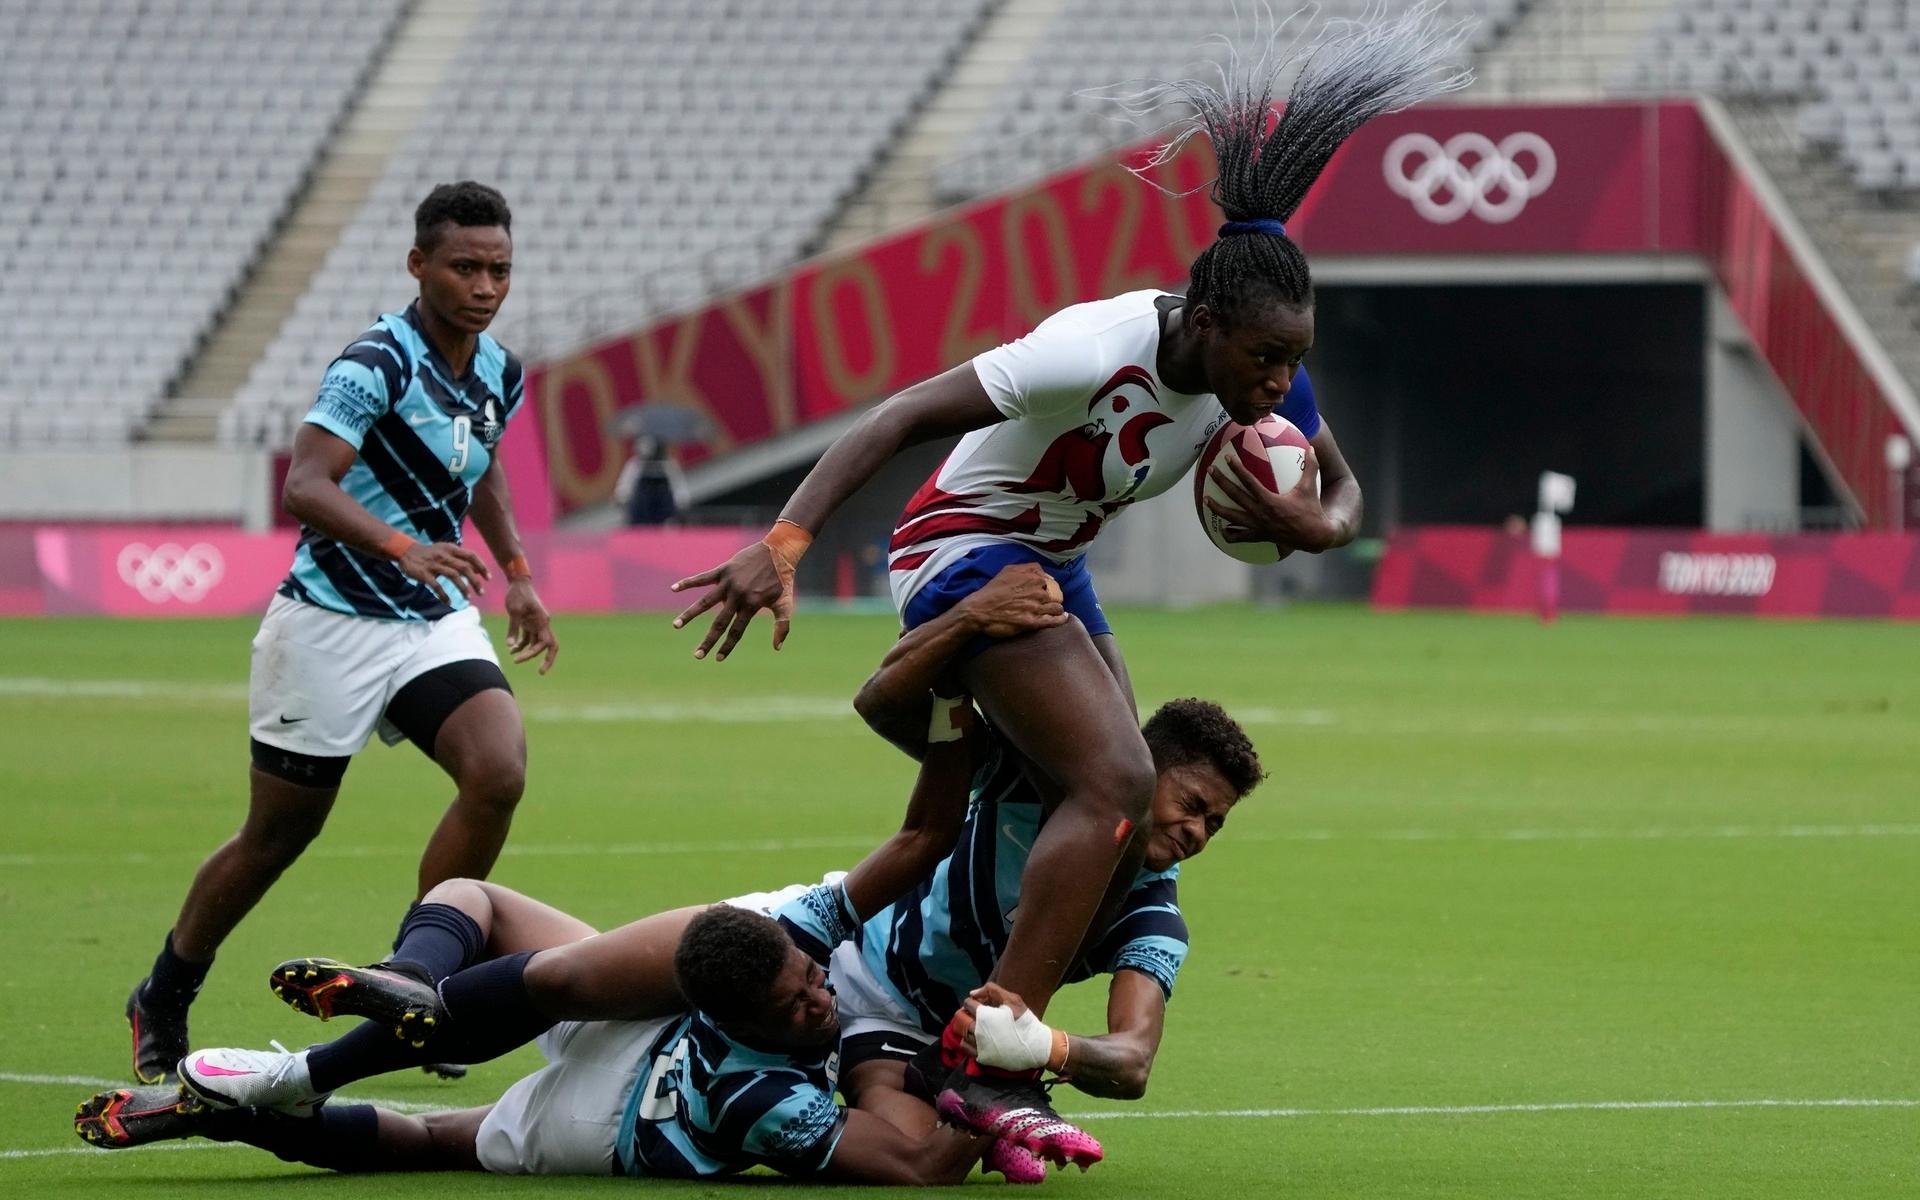 Frankrikes Seraphine Okemba jagas och tacklas av Fiji-spelare.